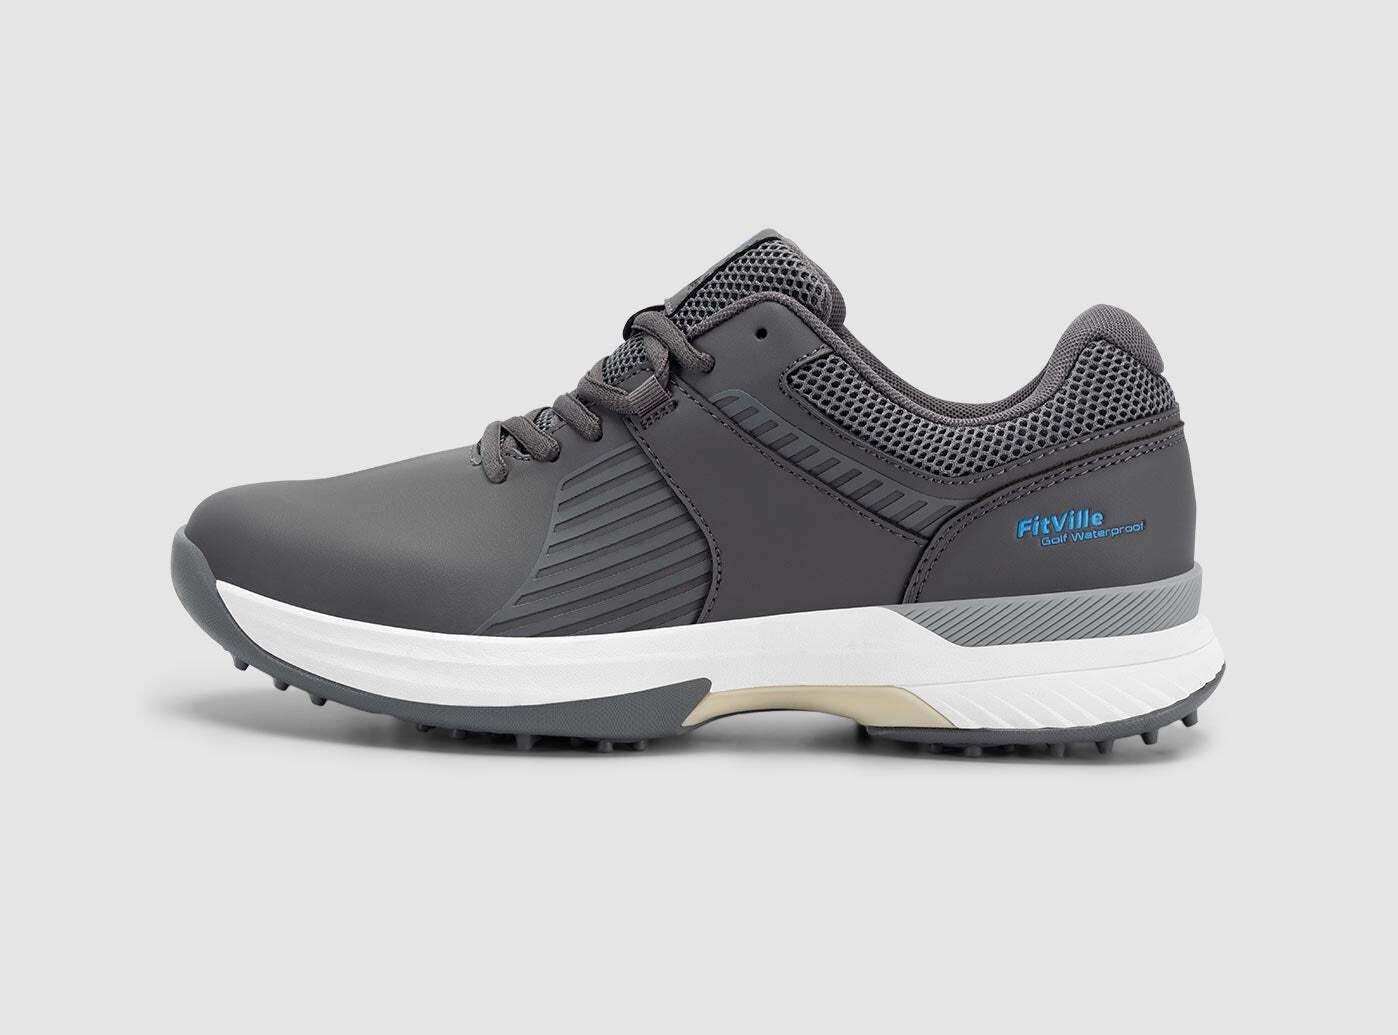 FitVille Men's SpeedEx Golf Shoes V4